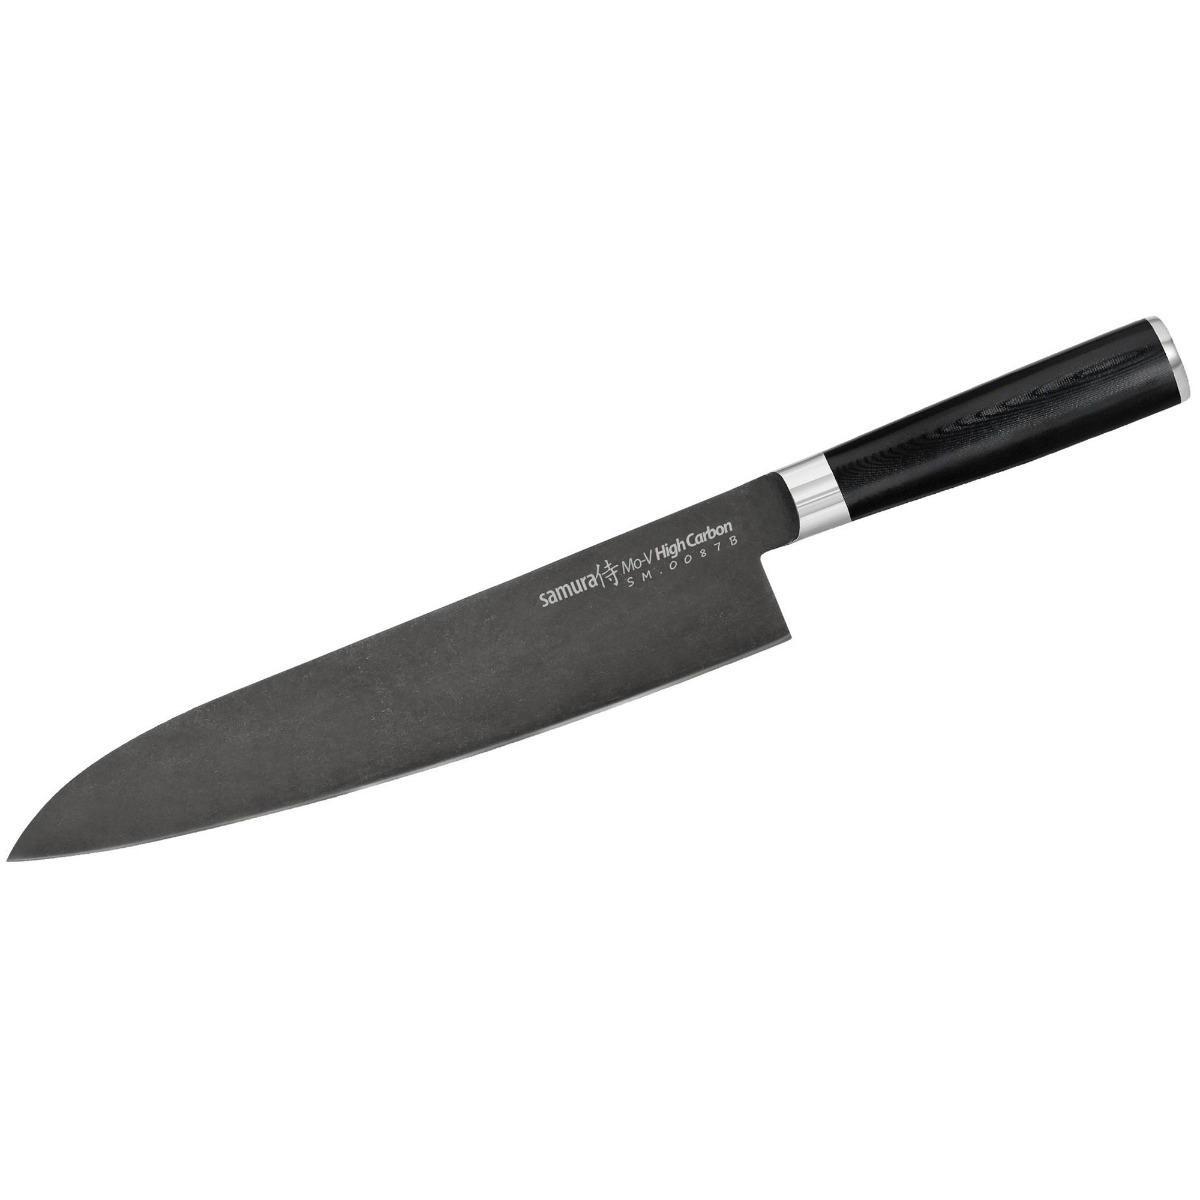 Μαχαίρι Grand Chef 24cm, MO-V STONEWASH - SAMURA®️